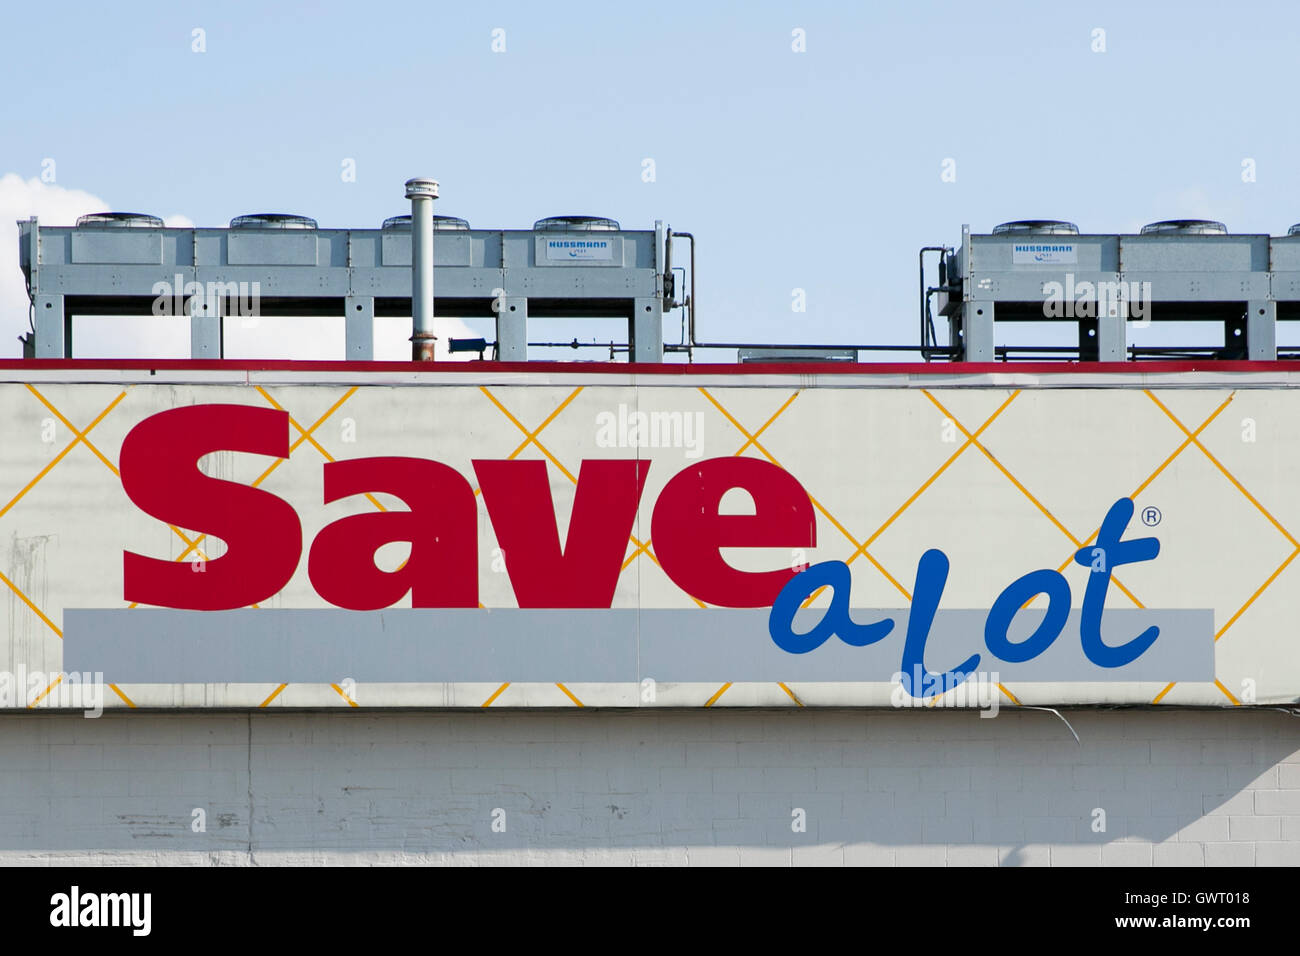 Un logotipo signo exterior de un Save-a-lot tienda de ultramarinos en Northwood, Ohio el 16 de julio de 2016. Foto de stock